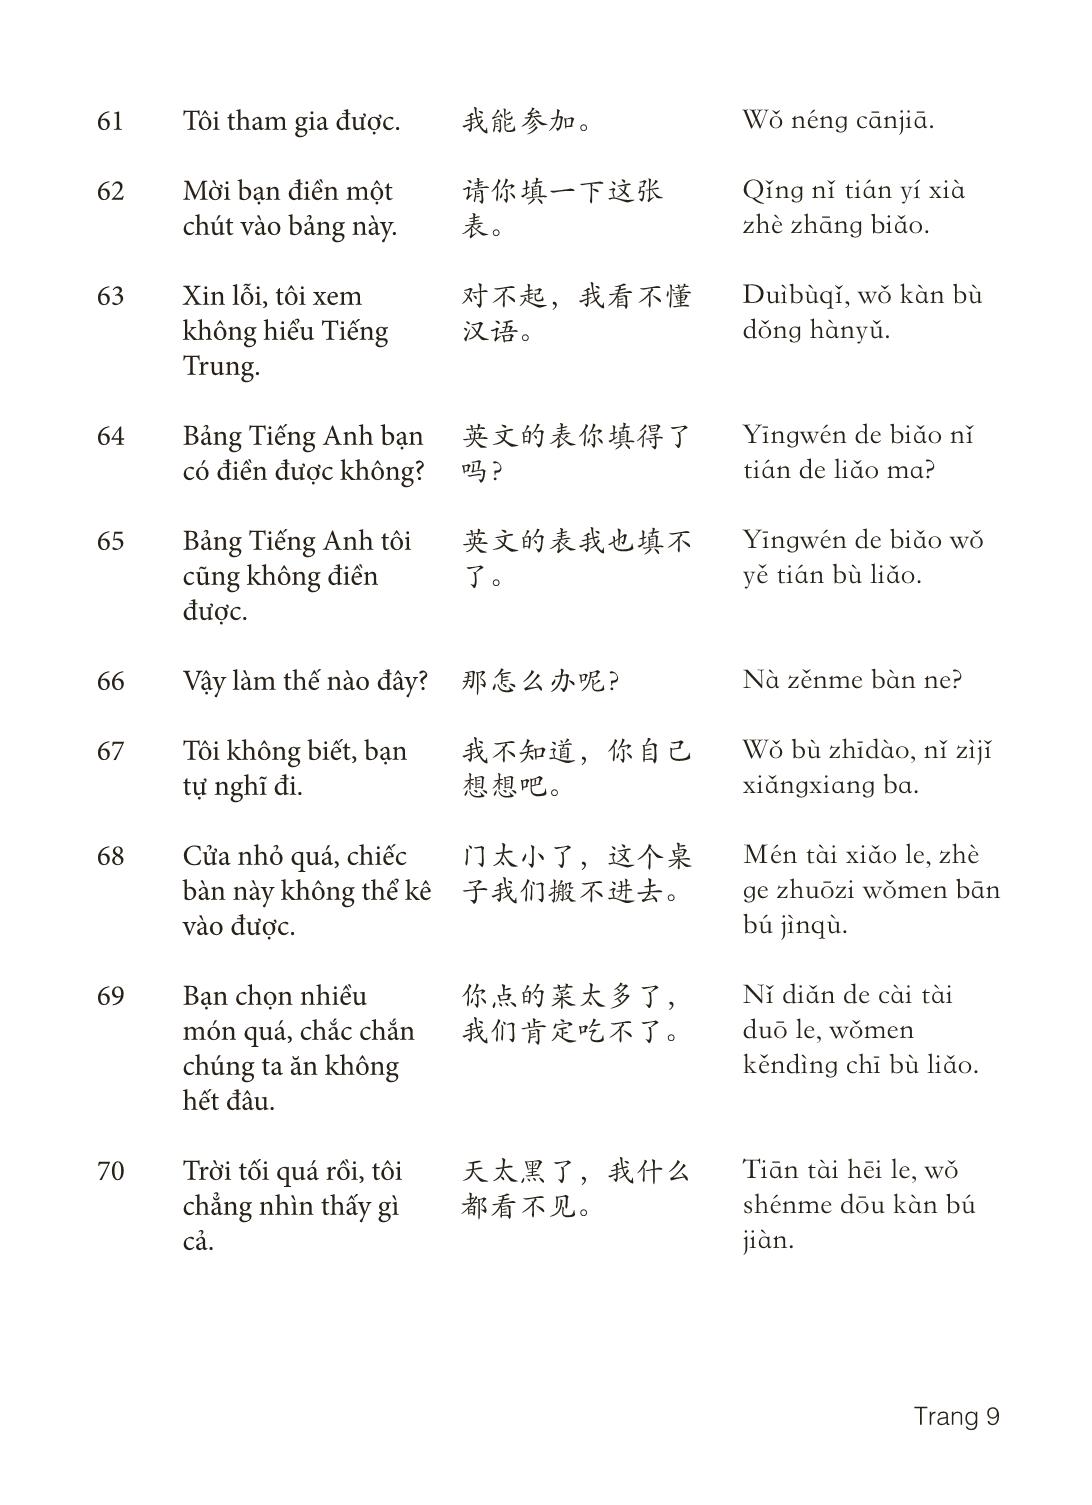 3000 Câu đàm thoại tiếng Hoa - Phần 25 trang 9